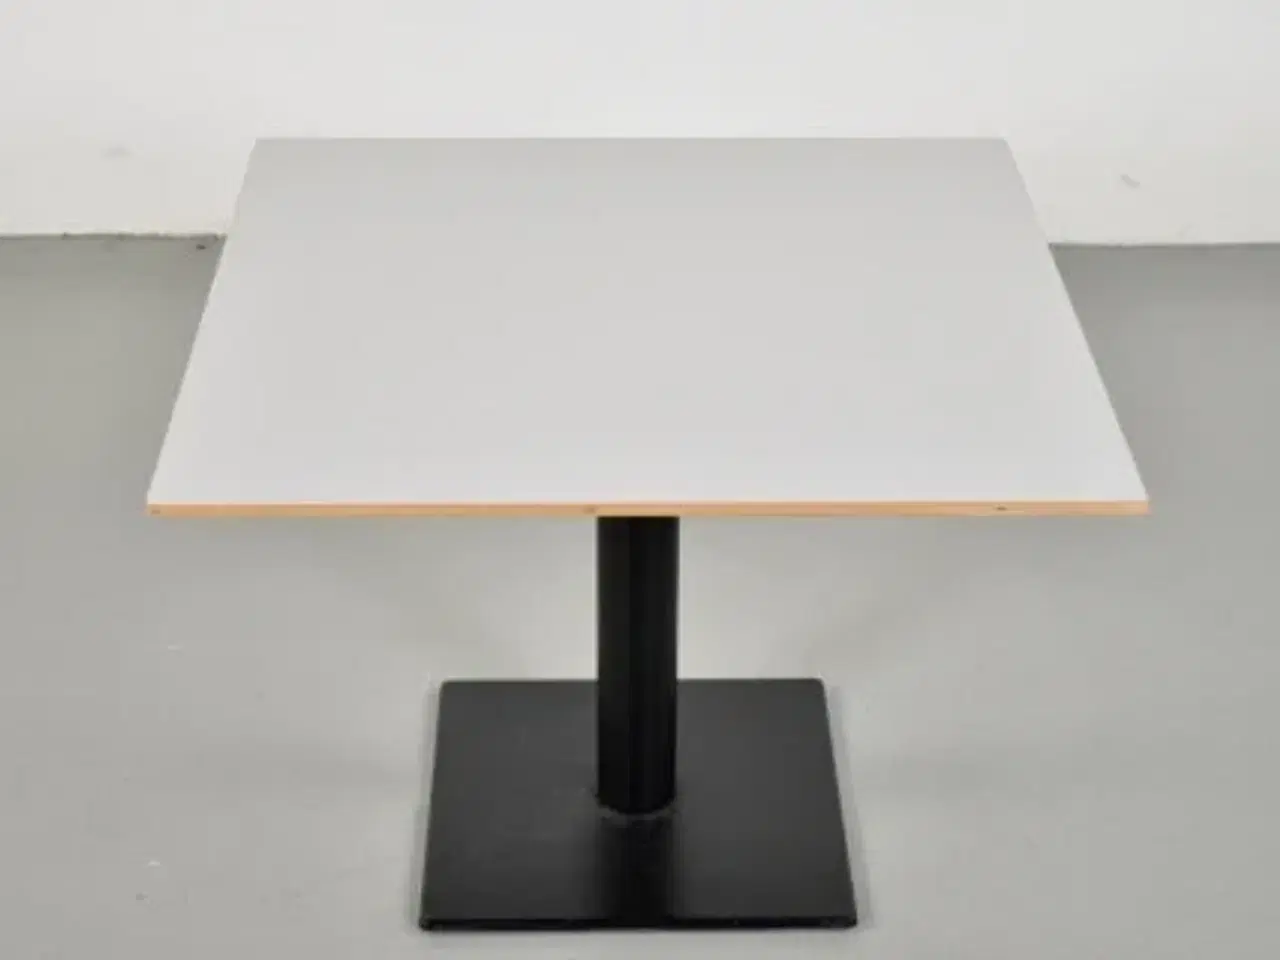 Billede 3 - Lavt cafebord fra zeta furniture med lysegrå plade og sort fod.